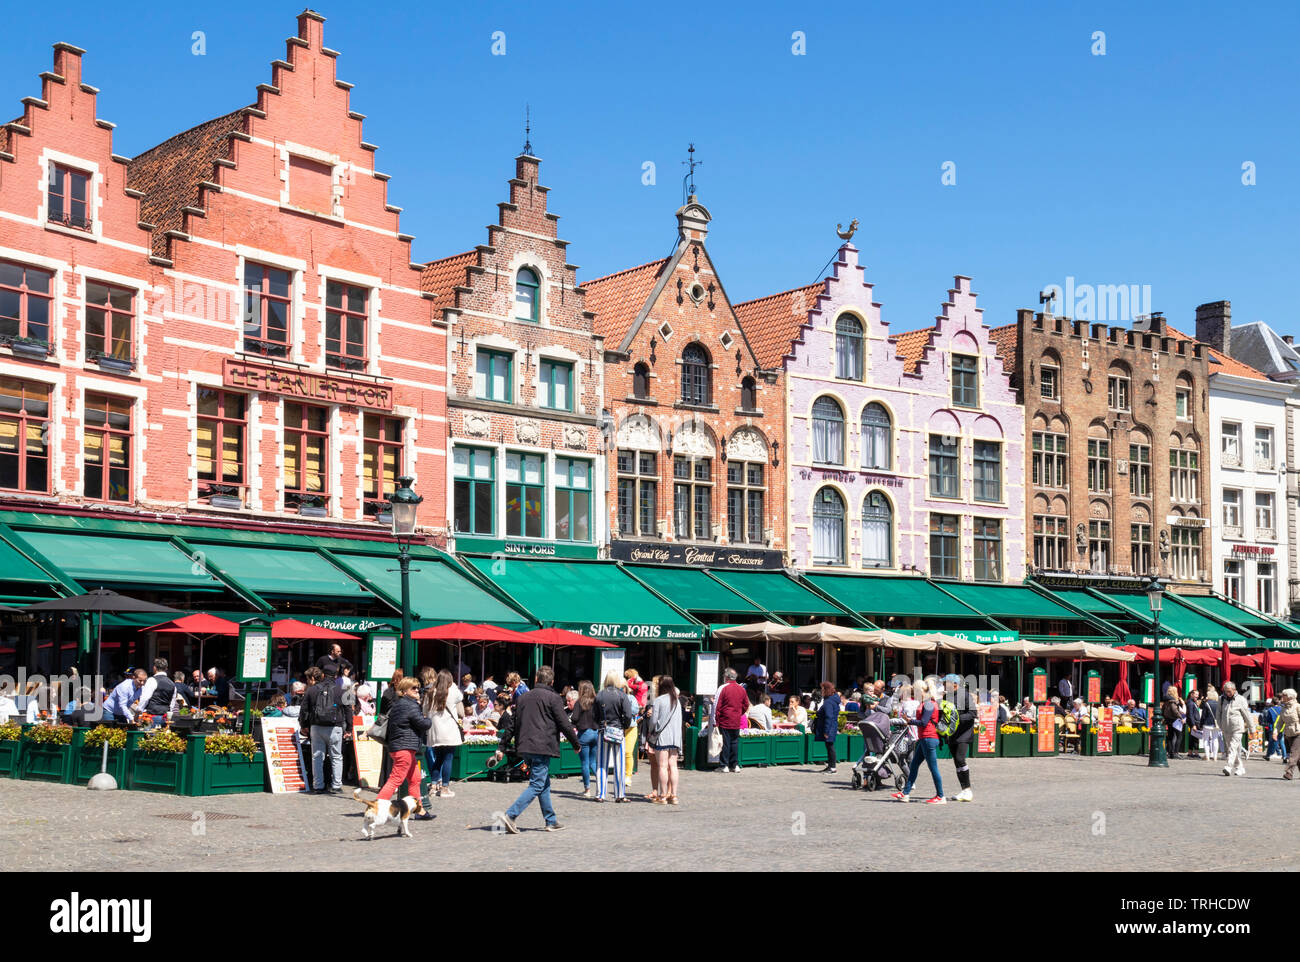 Maintenant les bâtiments anciens cafés et restaurants avec des pignons dans la place historique du marché dans le centre de Bruges Belgique Flandre occidentale eu Europe Banque D'Images